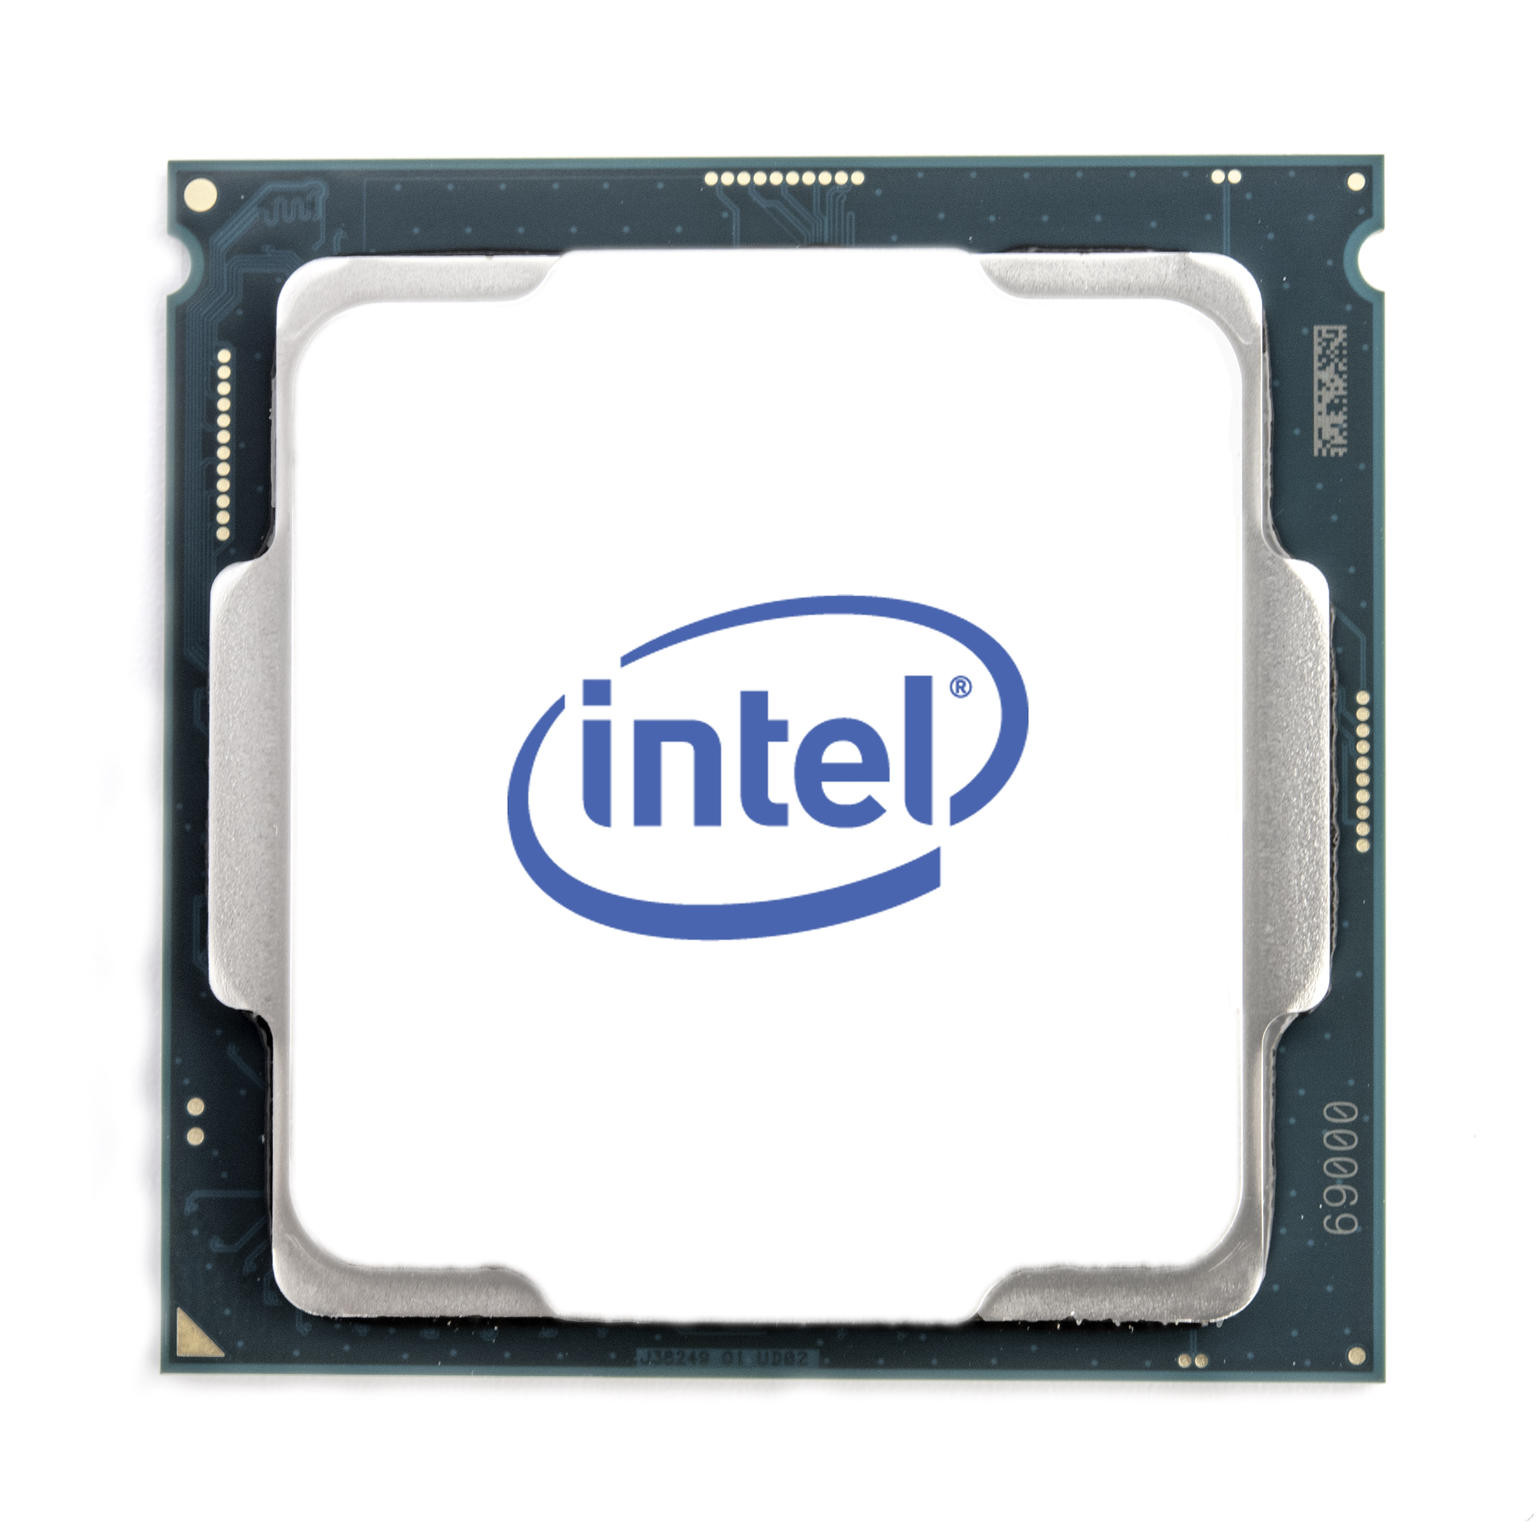 Intel Hexa Core i5-11600K processor